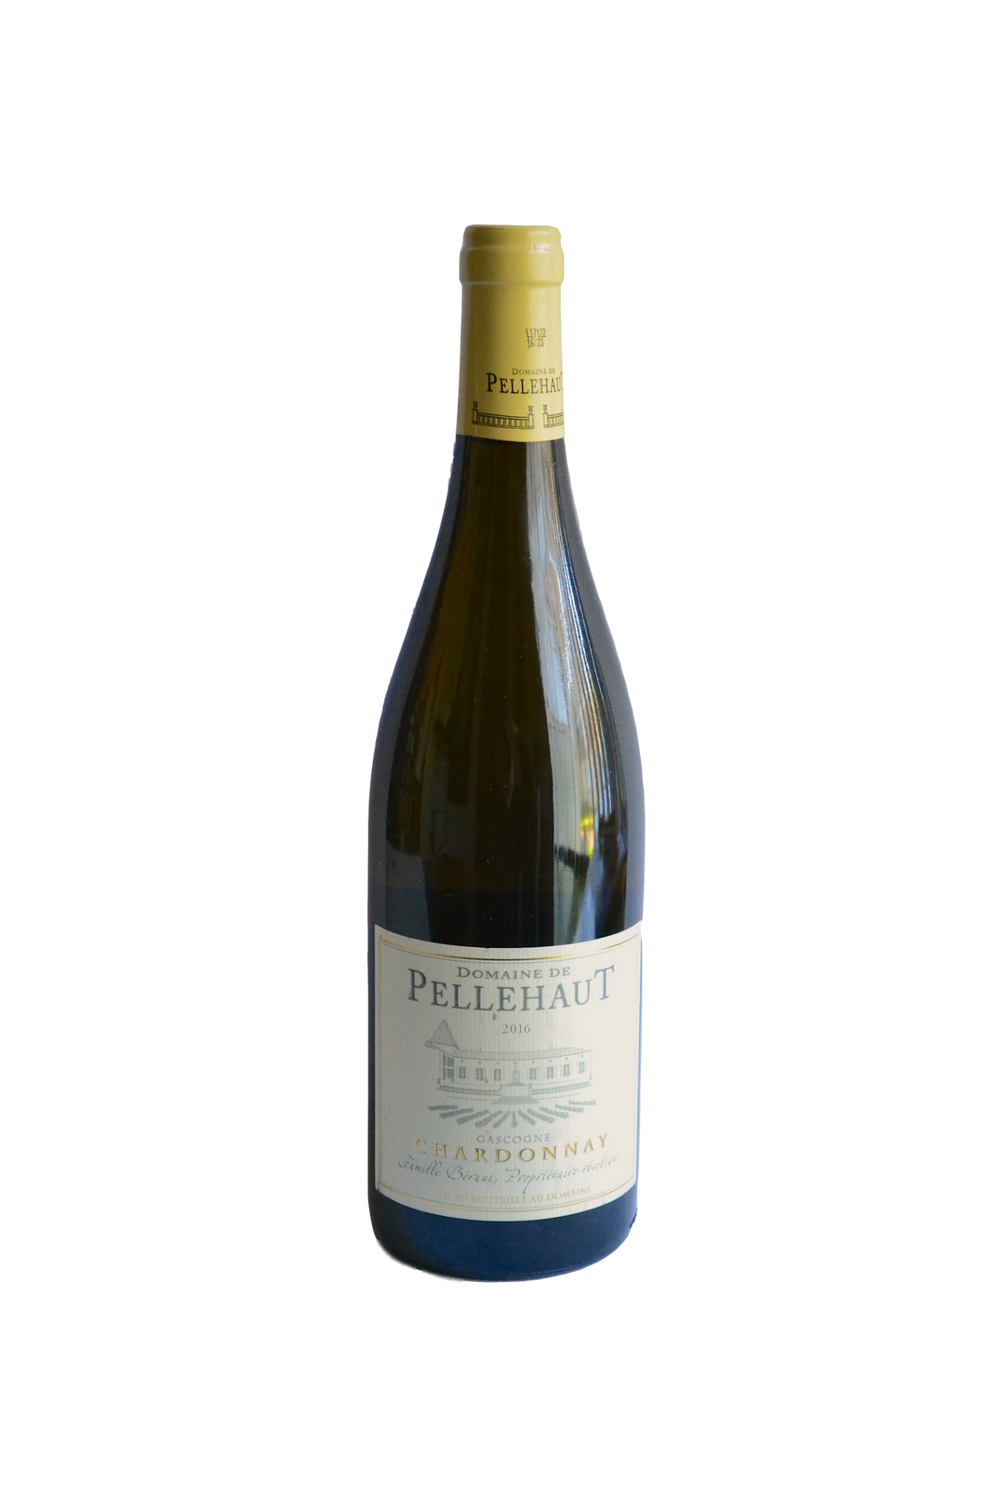 Domaine de Pellehaut Chardonnay 2016